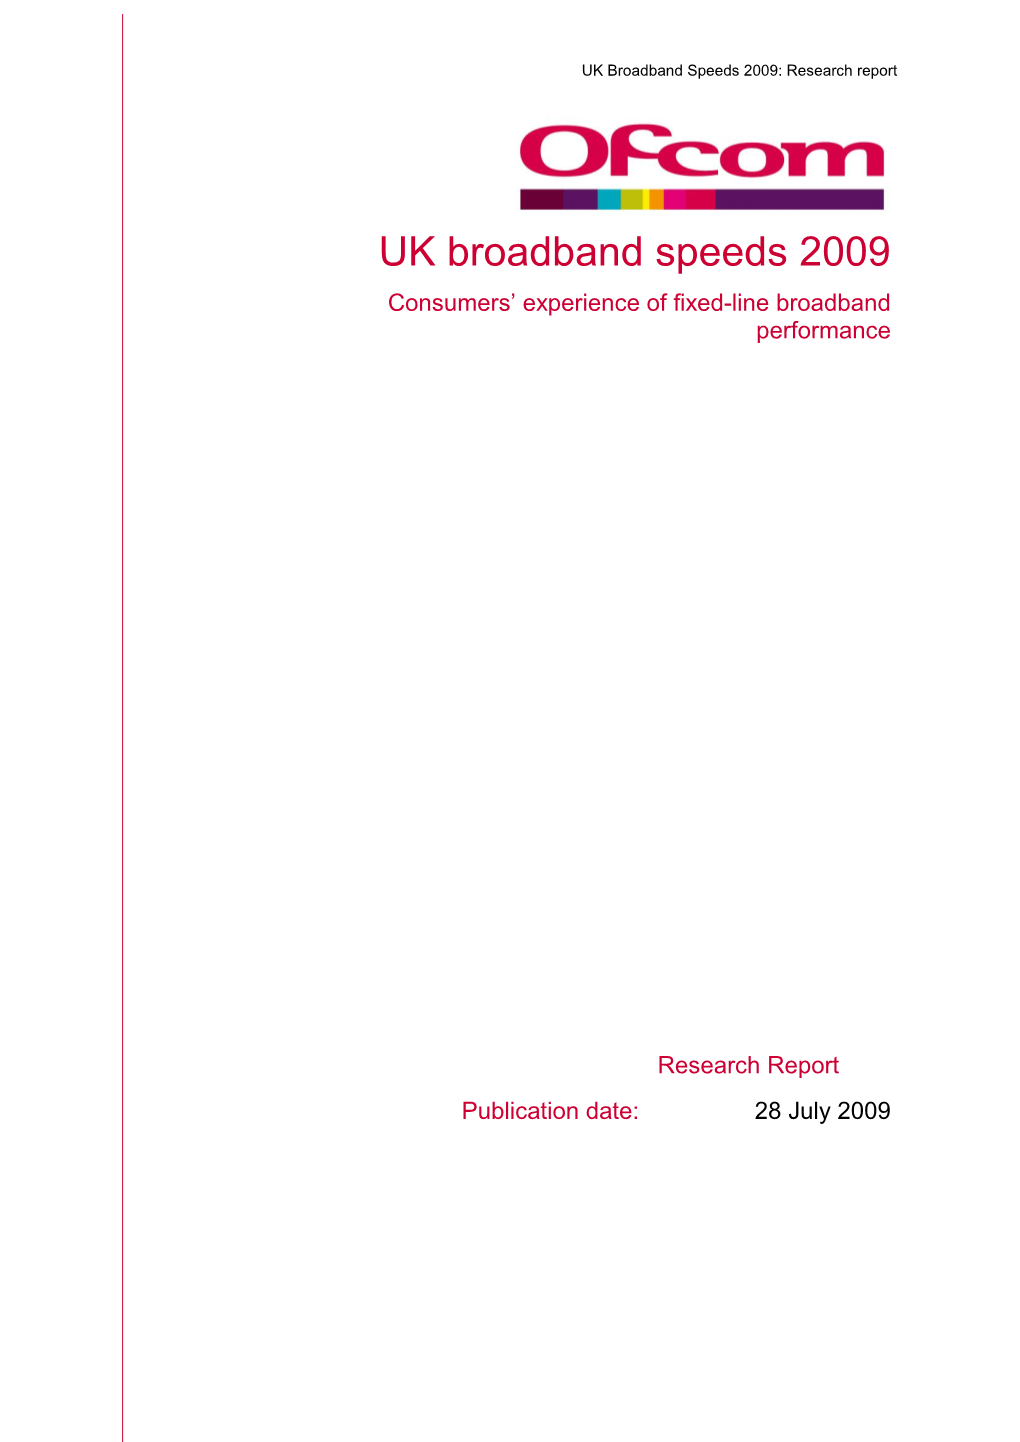 UK Broadband Speeds 2009: Research Report